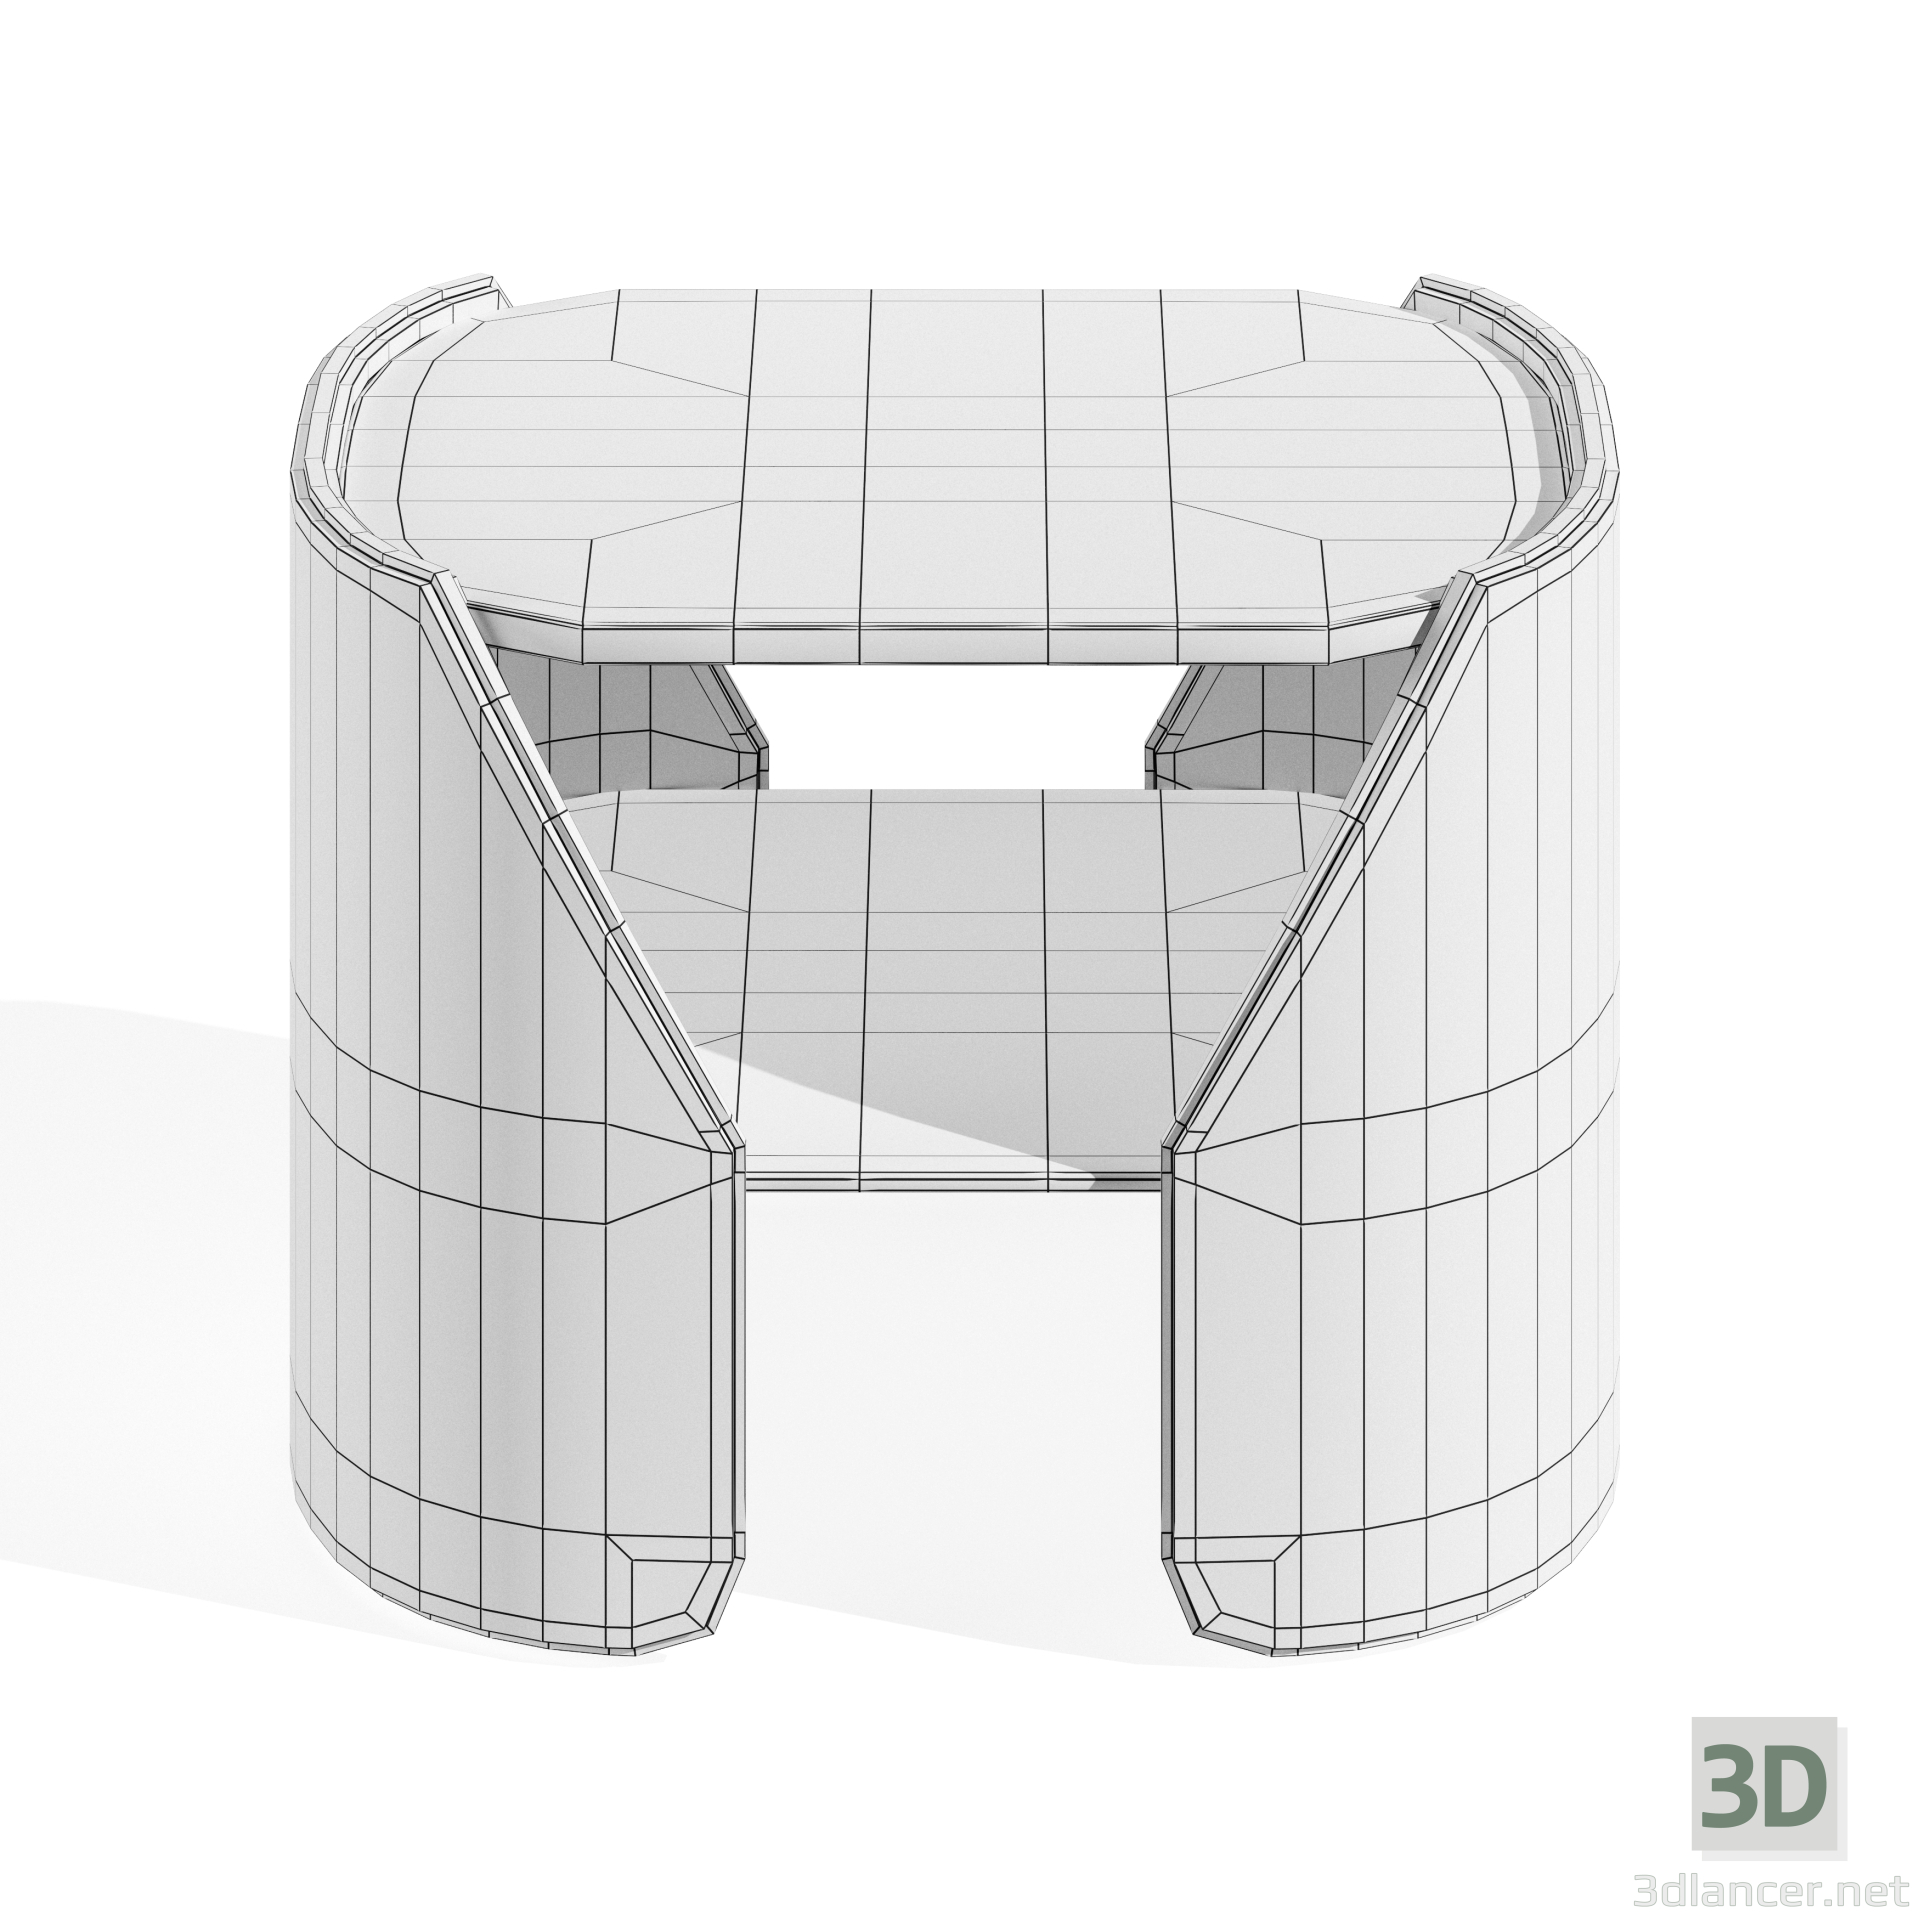 FITZGERALD NIEDRIGER TISCH 3D-Modell kaufen - Rendern